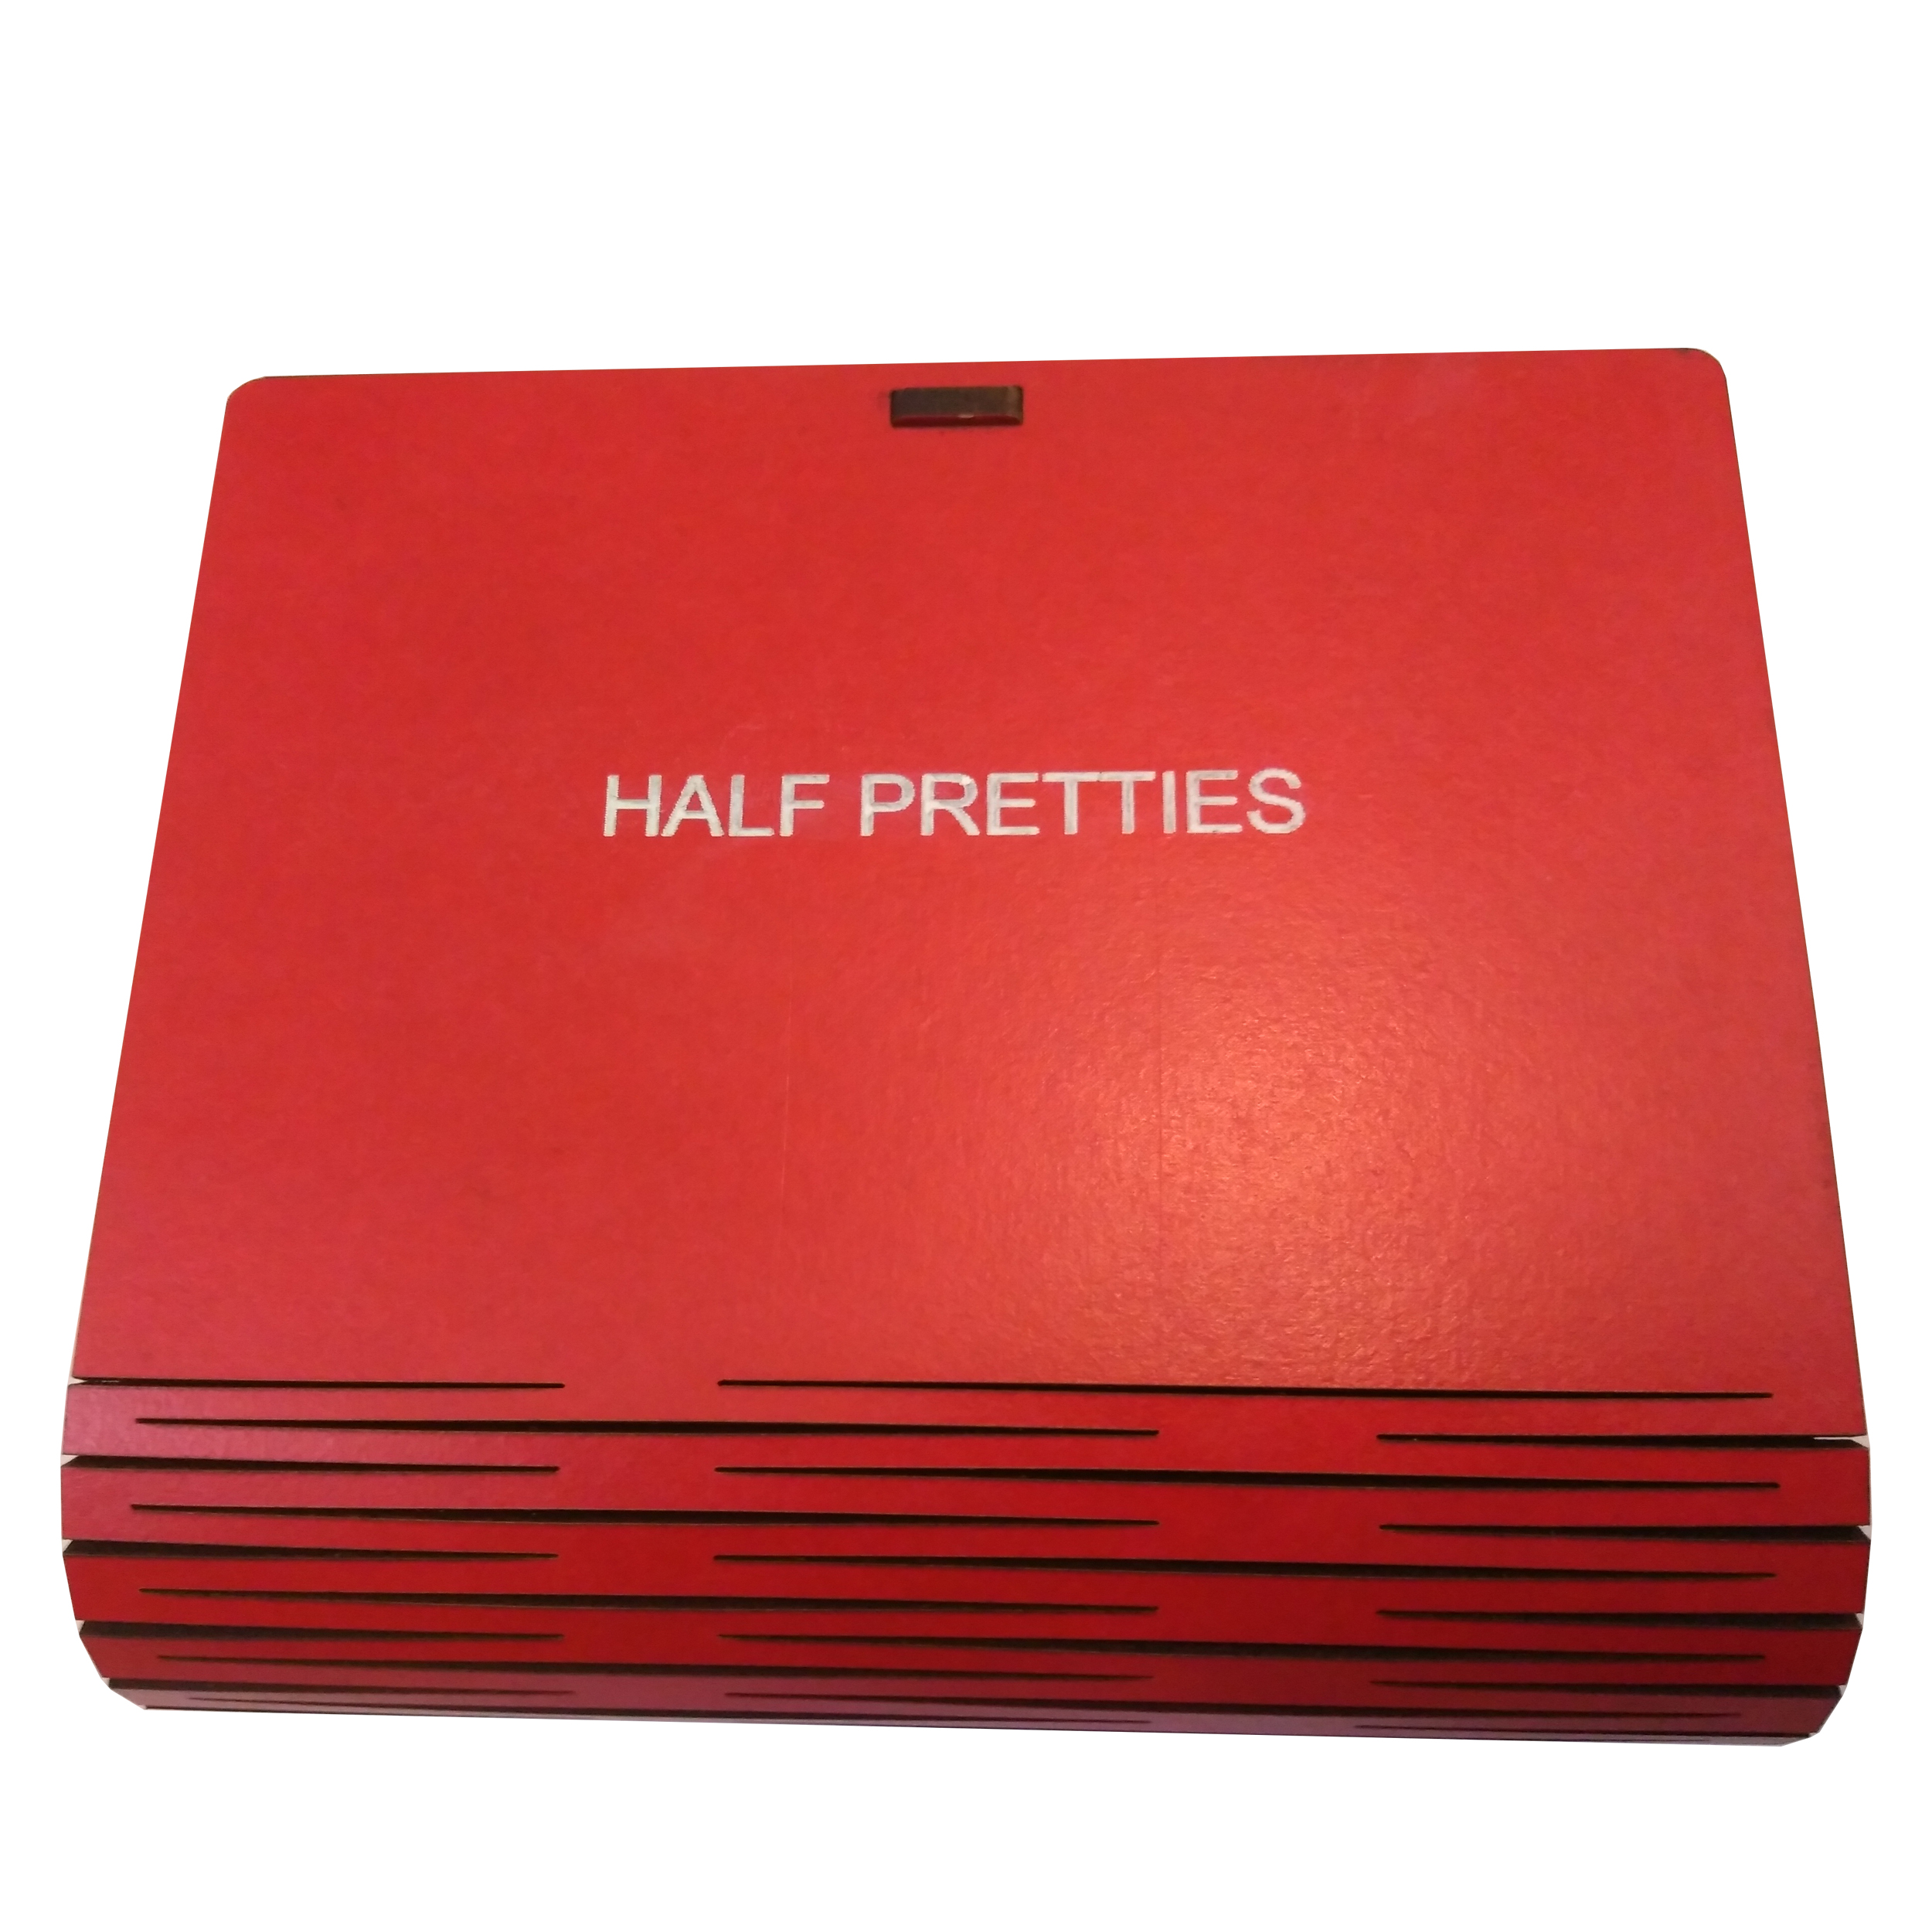 جعبه هدیه هاف پریتیز کد BOX12